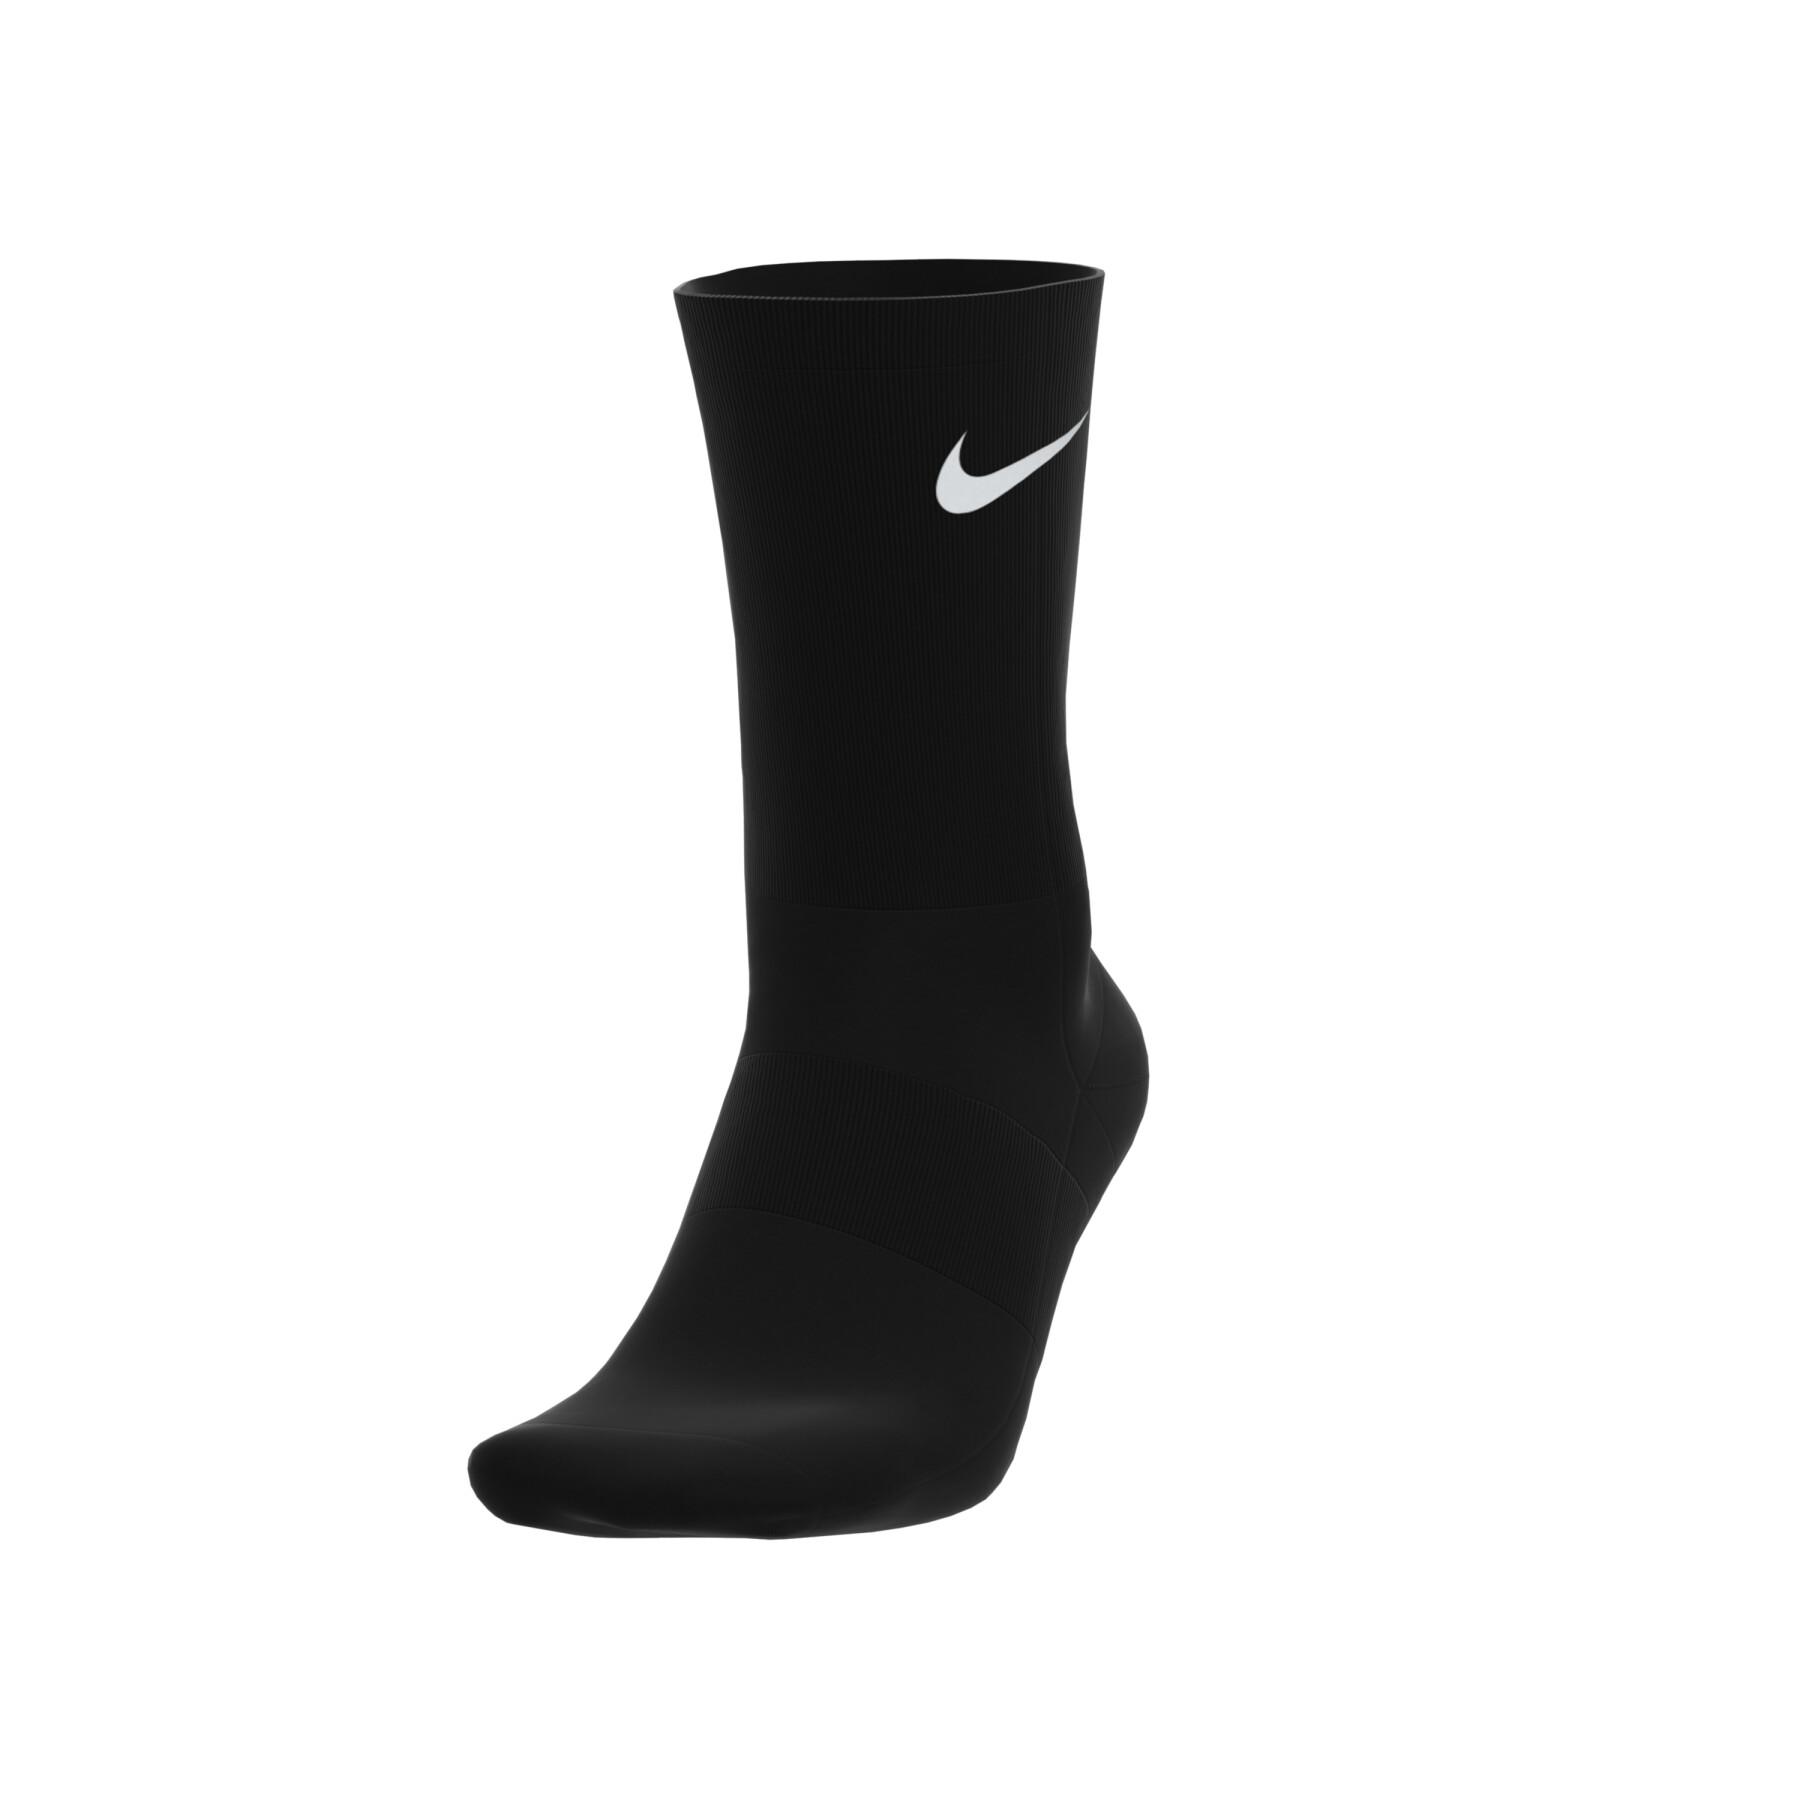 Chaussettes basses Nike noires épaisses